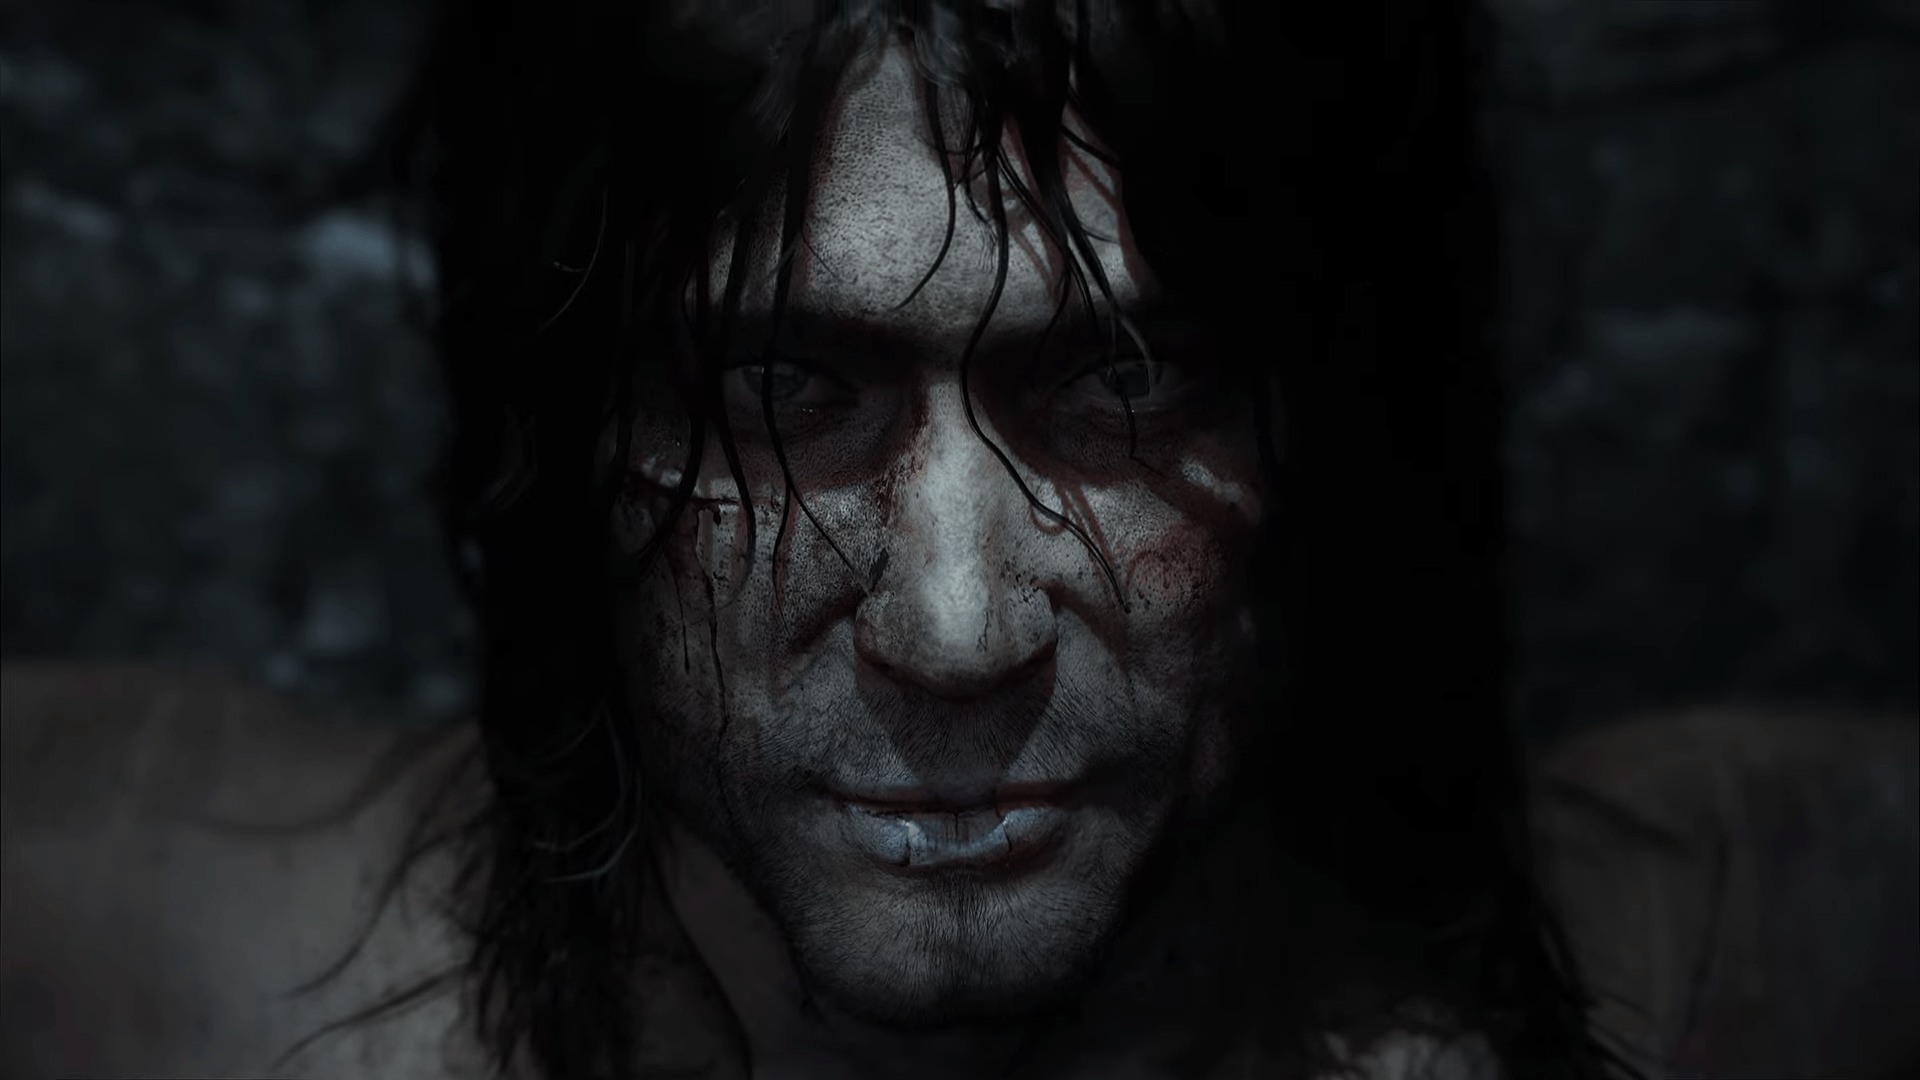 Kadr ze zwiastuna gry Thorgal. Portret mężczyzny z rozmazaną krwią na twarzy, o intensywnym wzroku, z mokrymi, przylegającymi do skóry włosami, na ciemnym, nieostrym tle.